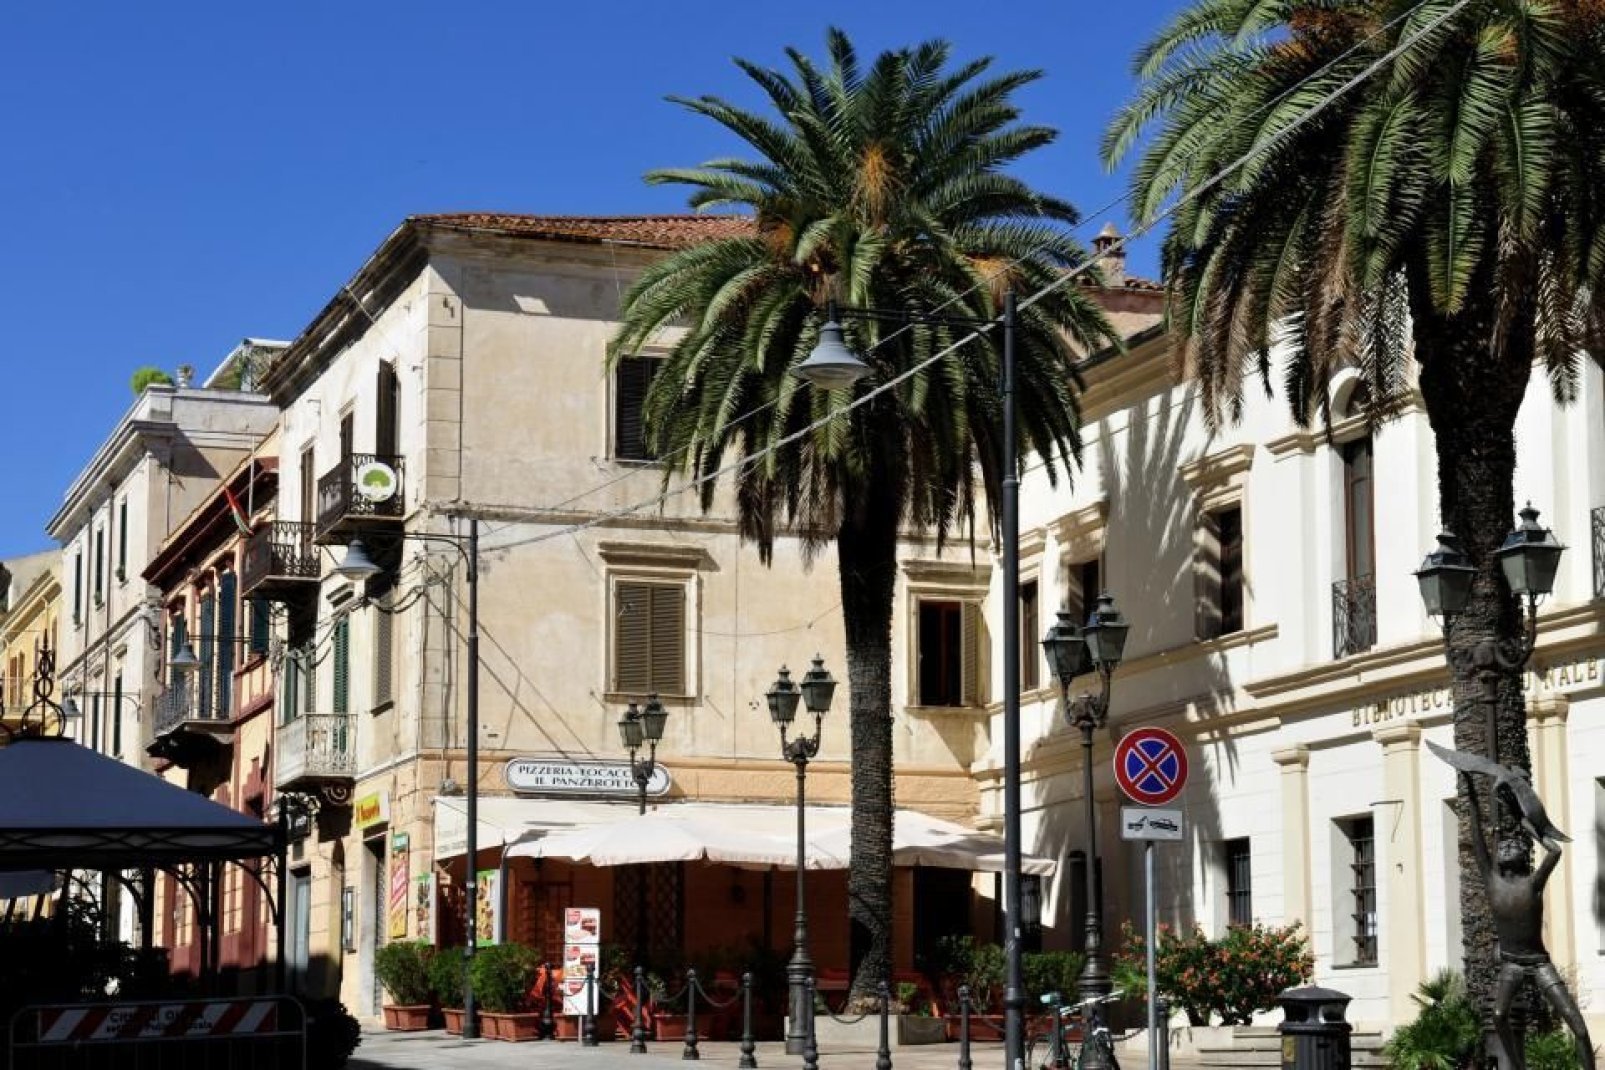 Le corso Umberto I forme l'épine dorsale du centre-ville d'Olbia. On y trouve de nombreuses boutiques et restaurants.